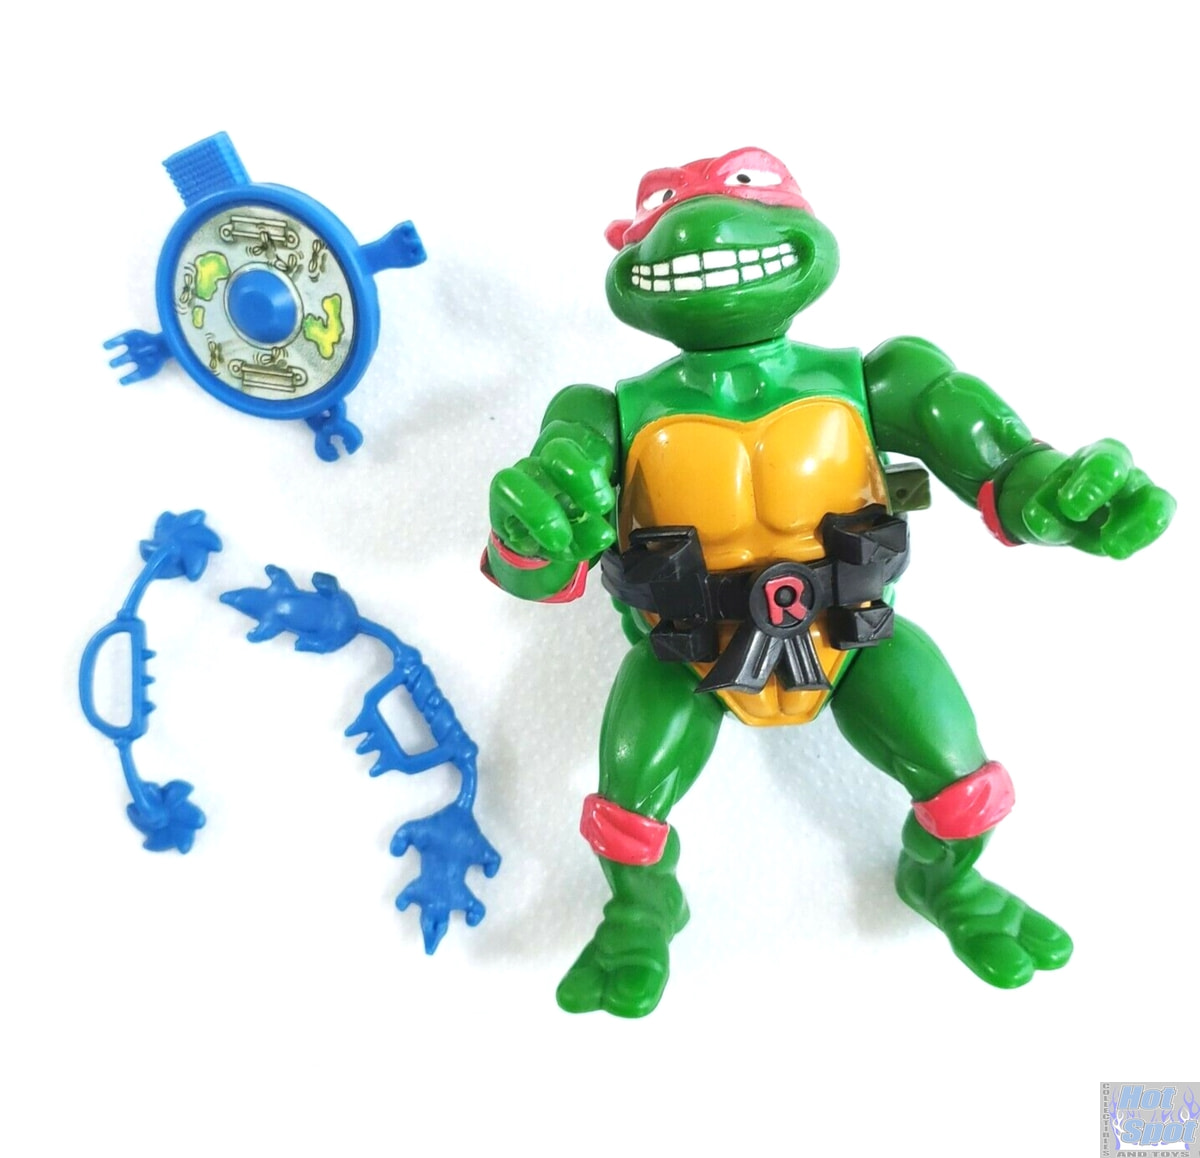 Vtg Teenage Mutant Ninja Turtles TMNT Figure Parts Accessories Weapons Vehicles